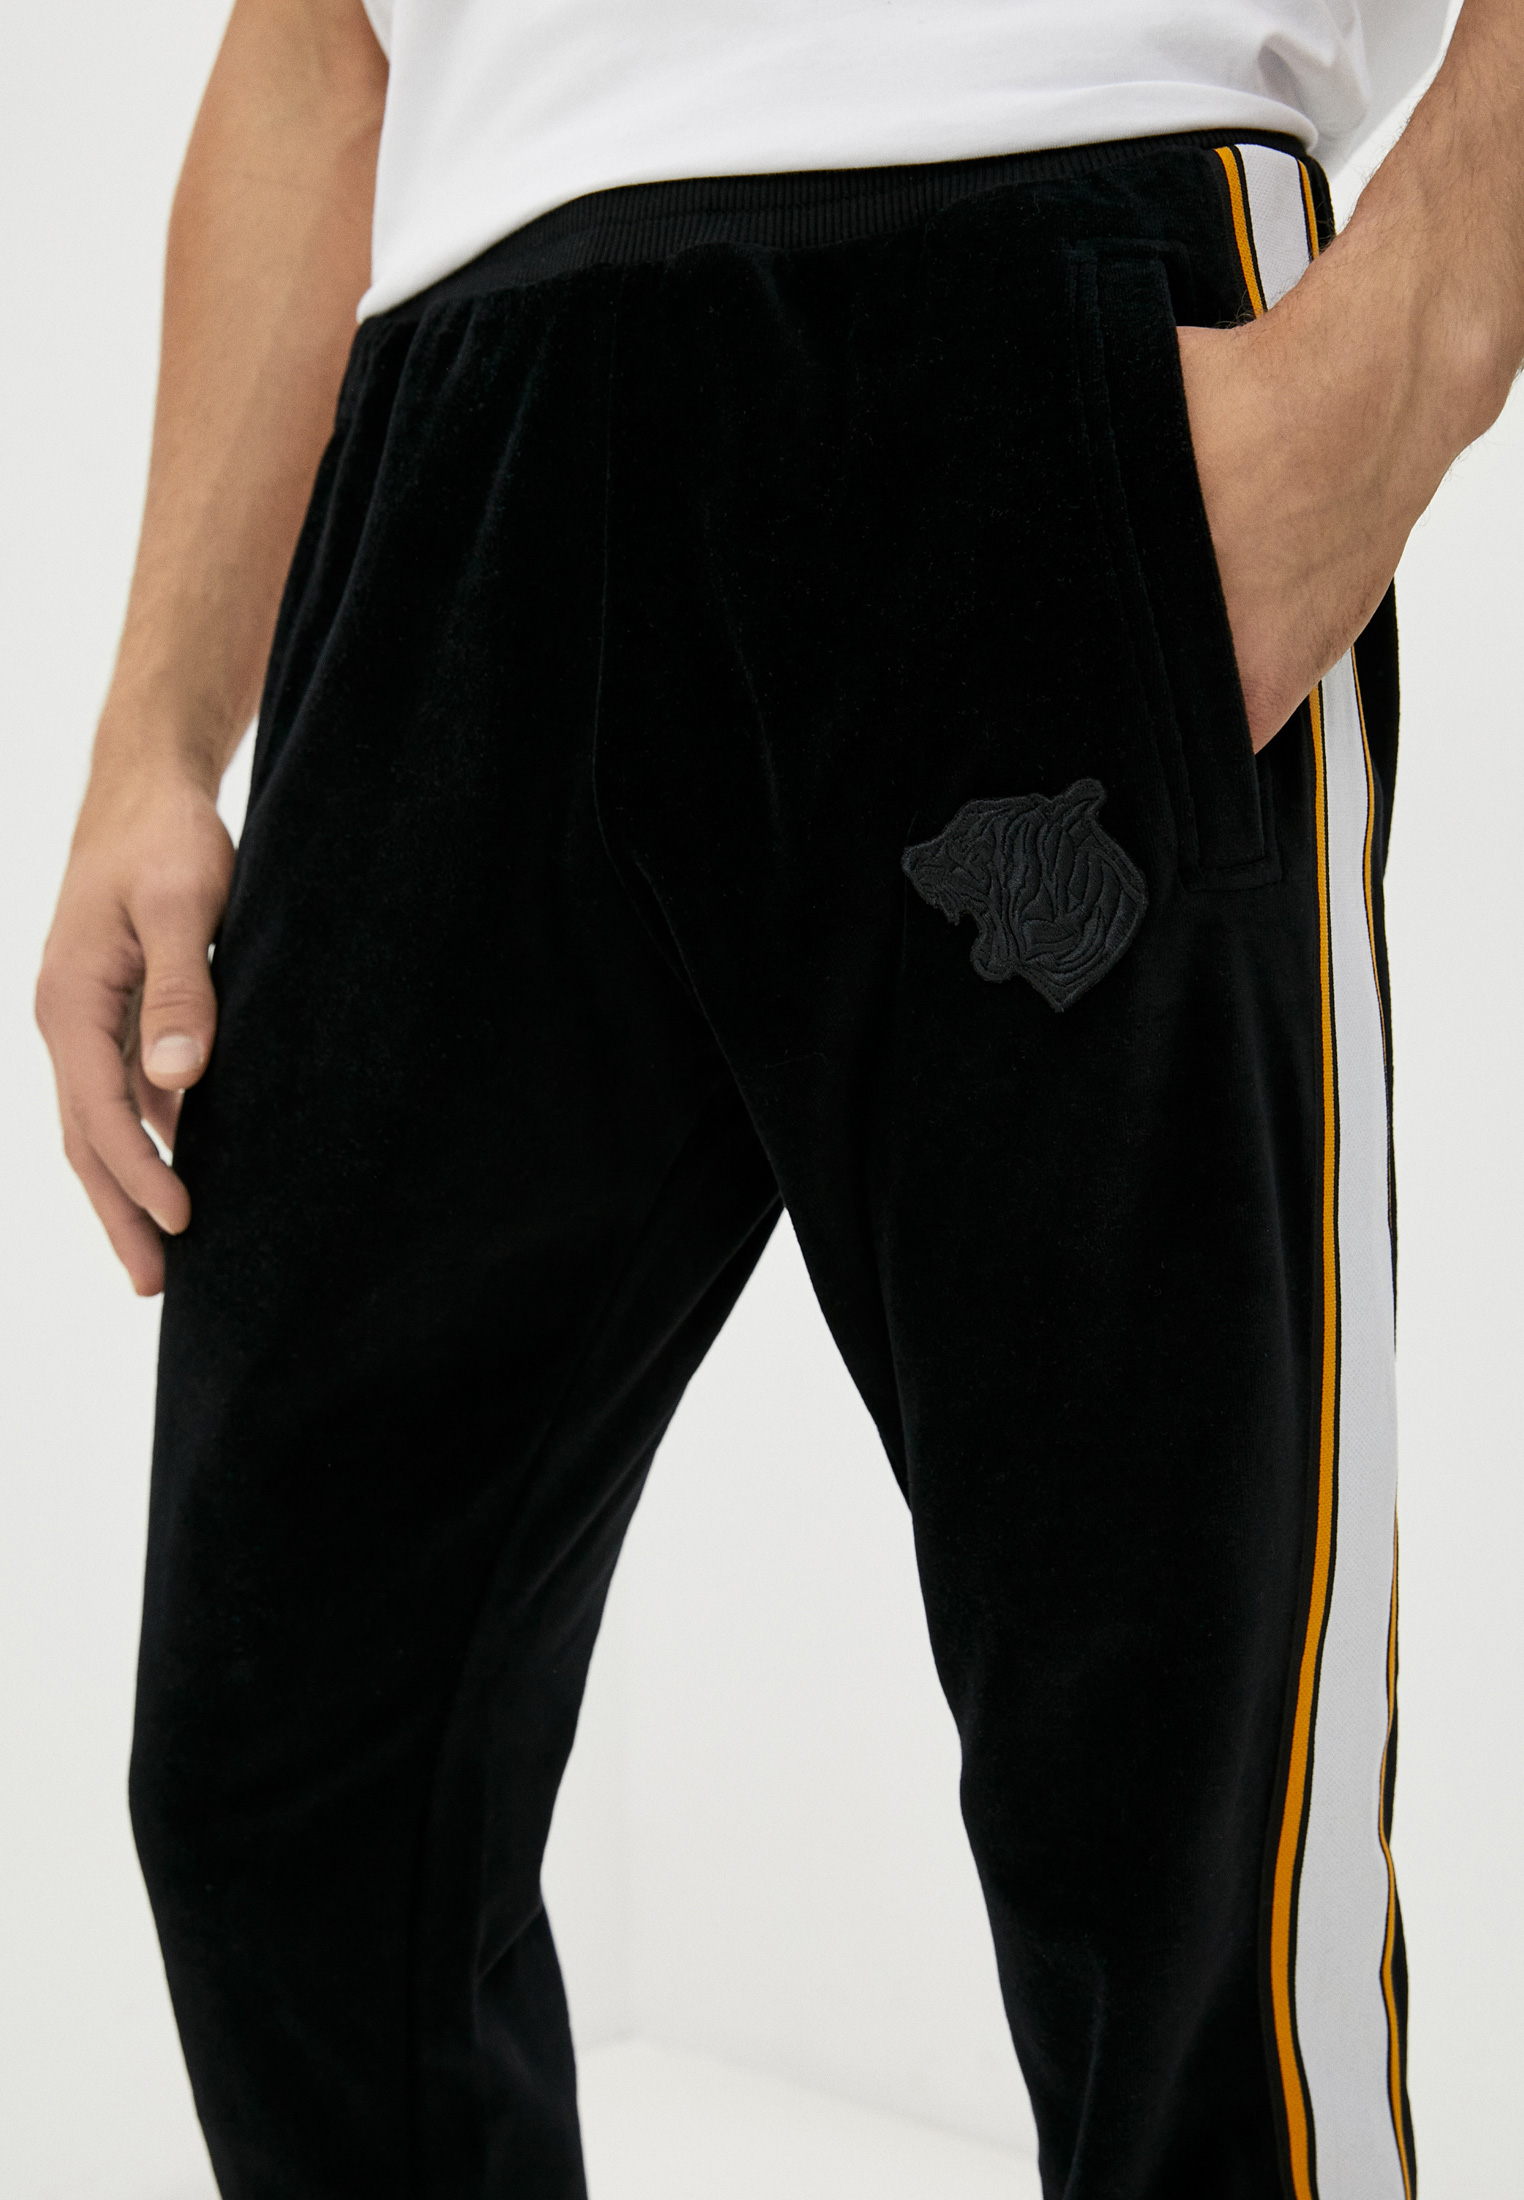 Мужские спортивные брюки Just Cavalli (Джаст Кавалли) S03KA0259N21589: изображение 5